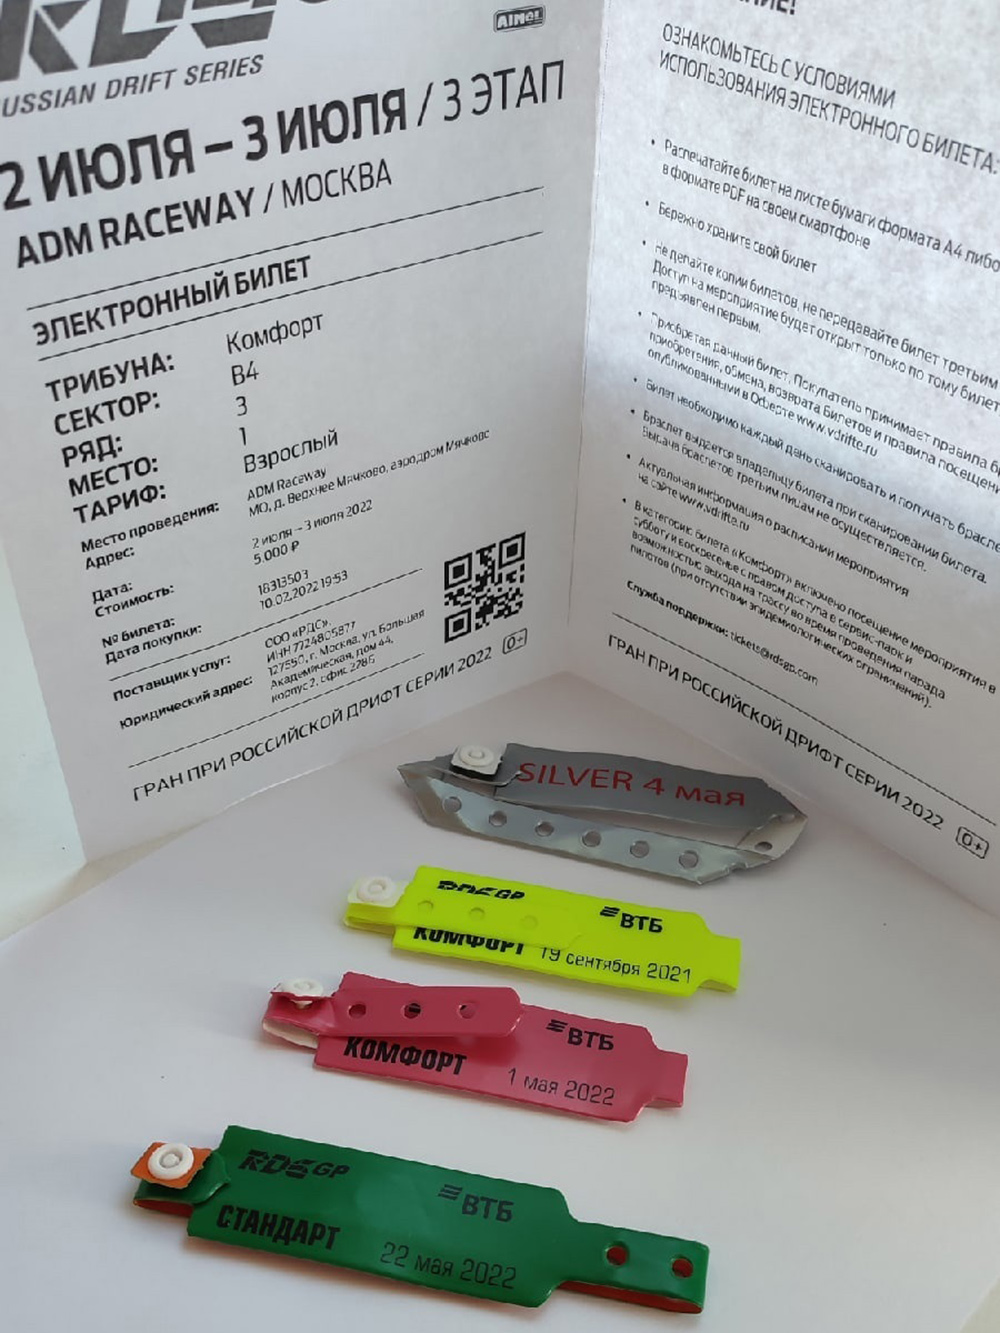 Билет и браслеты для доступа на этап